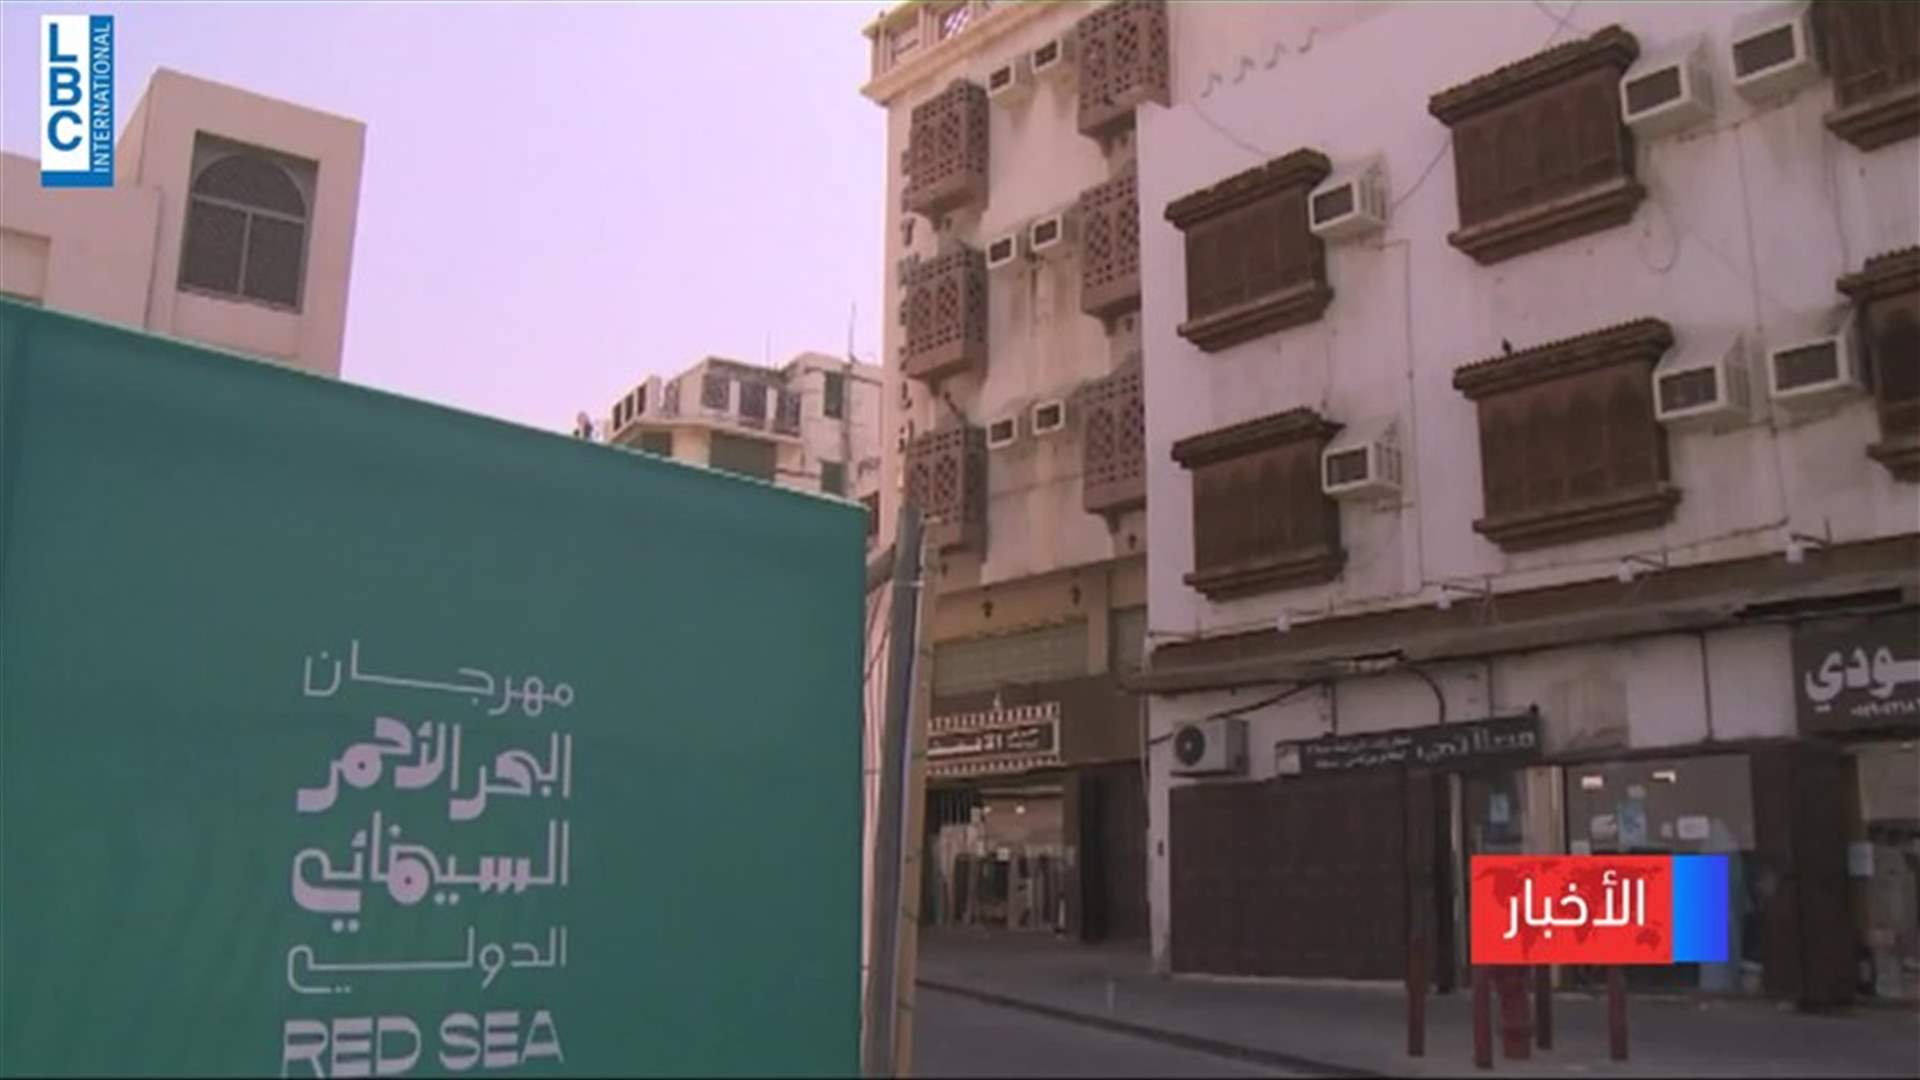 مهرجان البحر الاحمر للسينما في السعودية يفتتح يومه الاول بفيلم فلسطيني